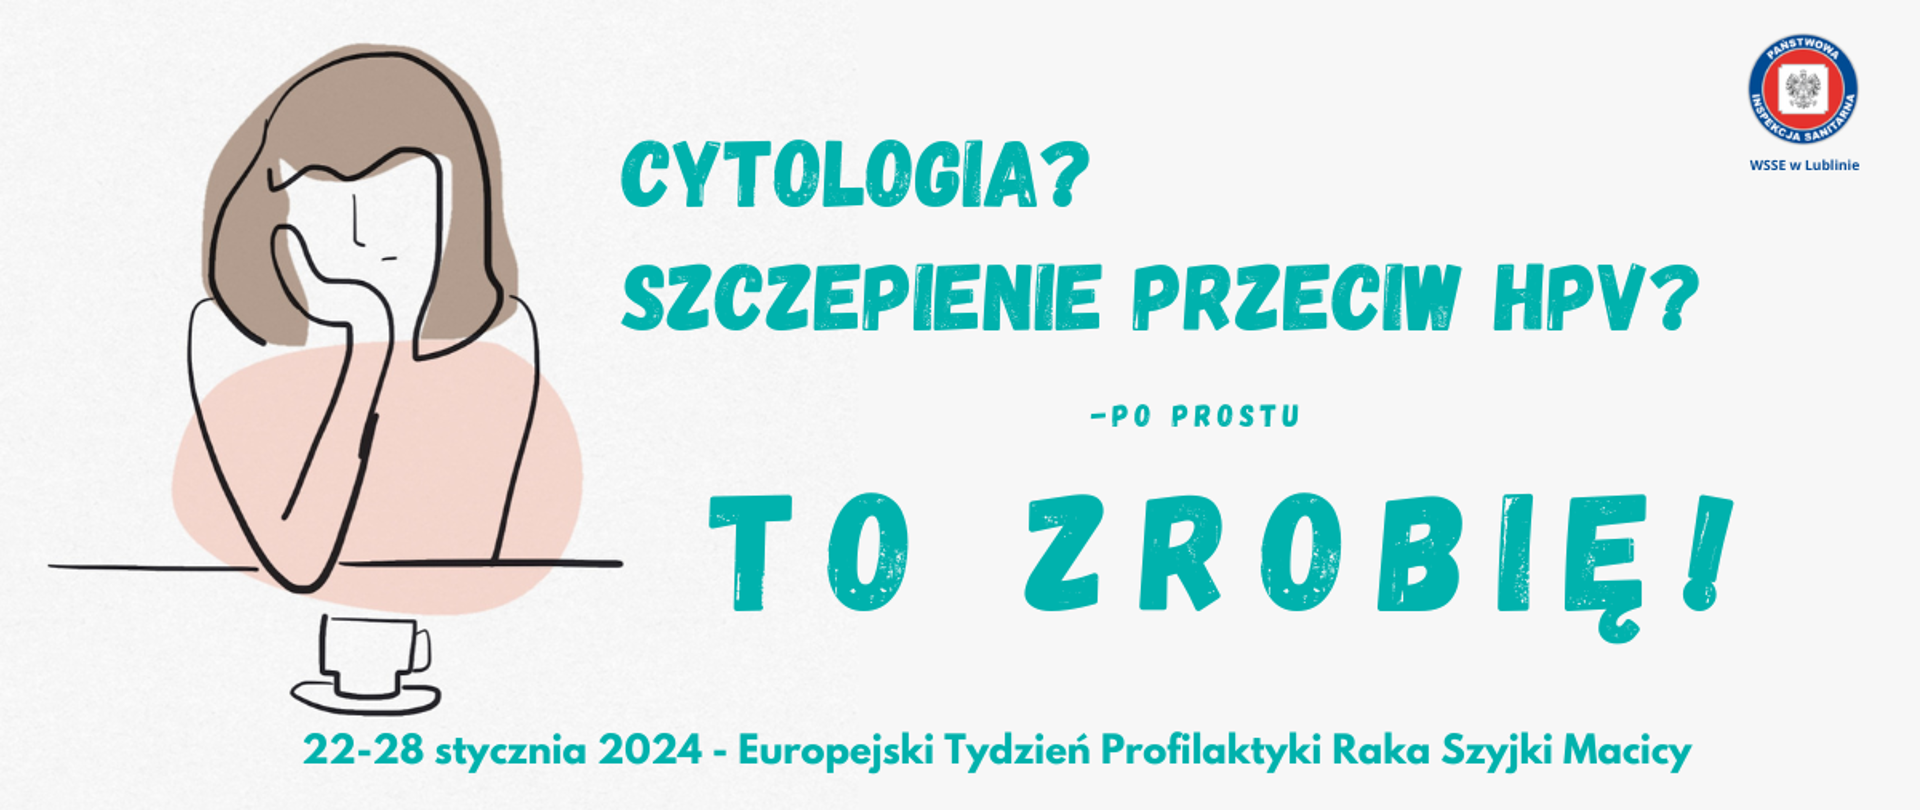 22-28 stycznia -Europejski Tydzień Profilaktyki Raka Szyjki Macicy. Cytologia? szczepienie przecie HPV? po prostu to zrobię. obok grafika zamyślonej kobiety